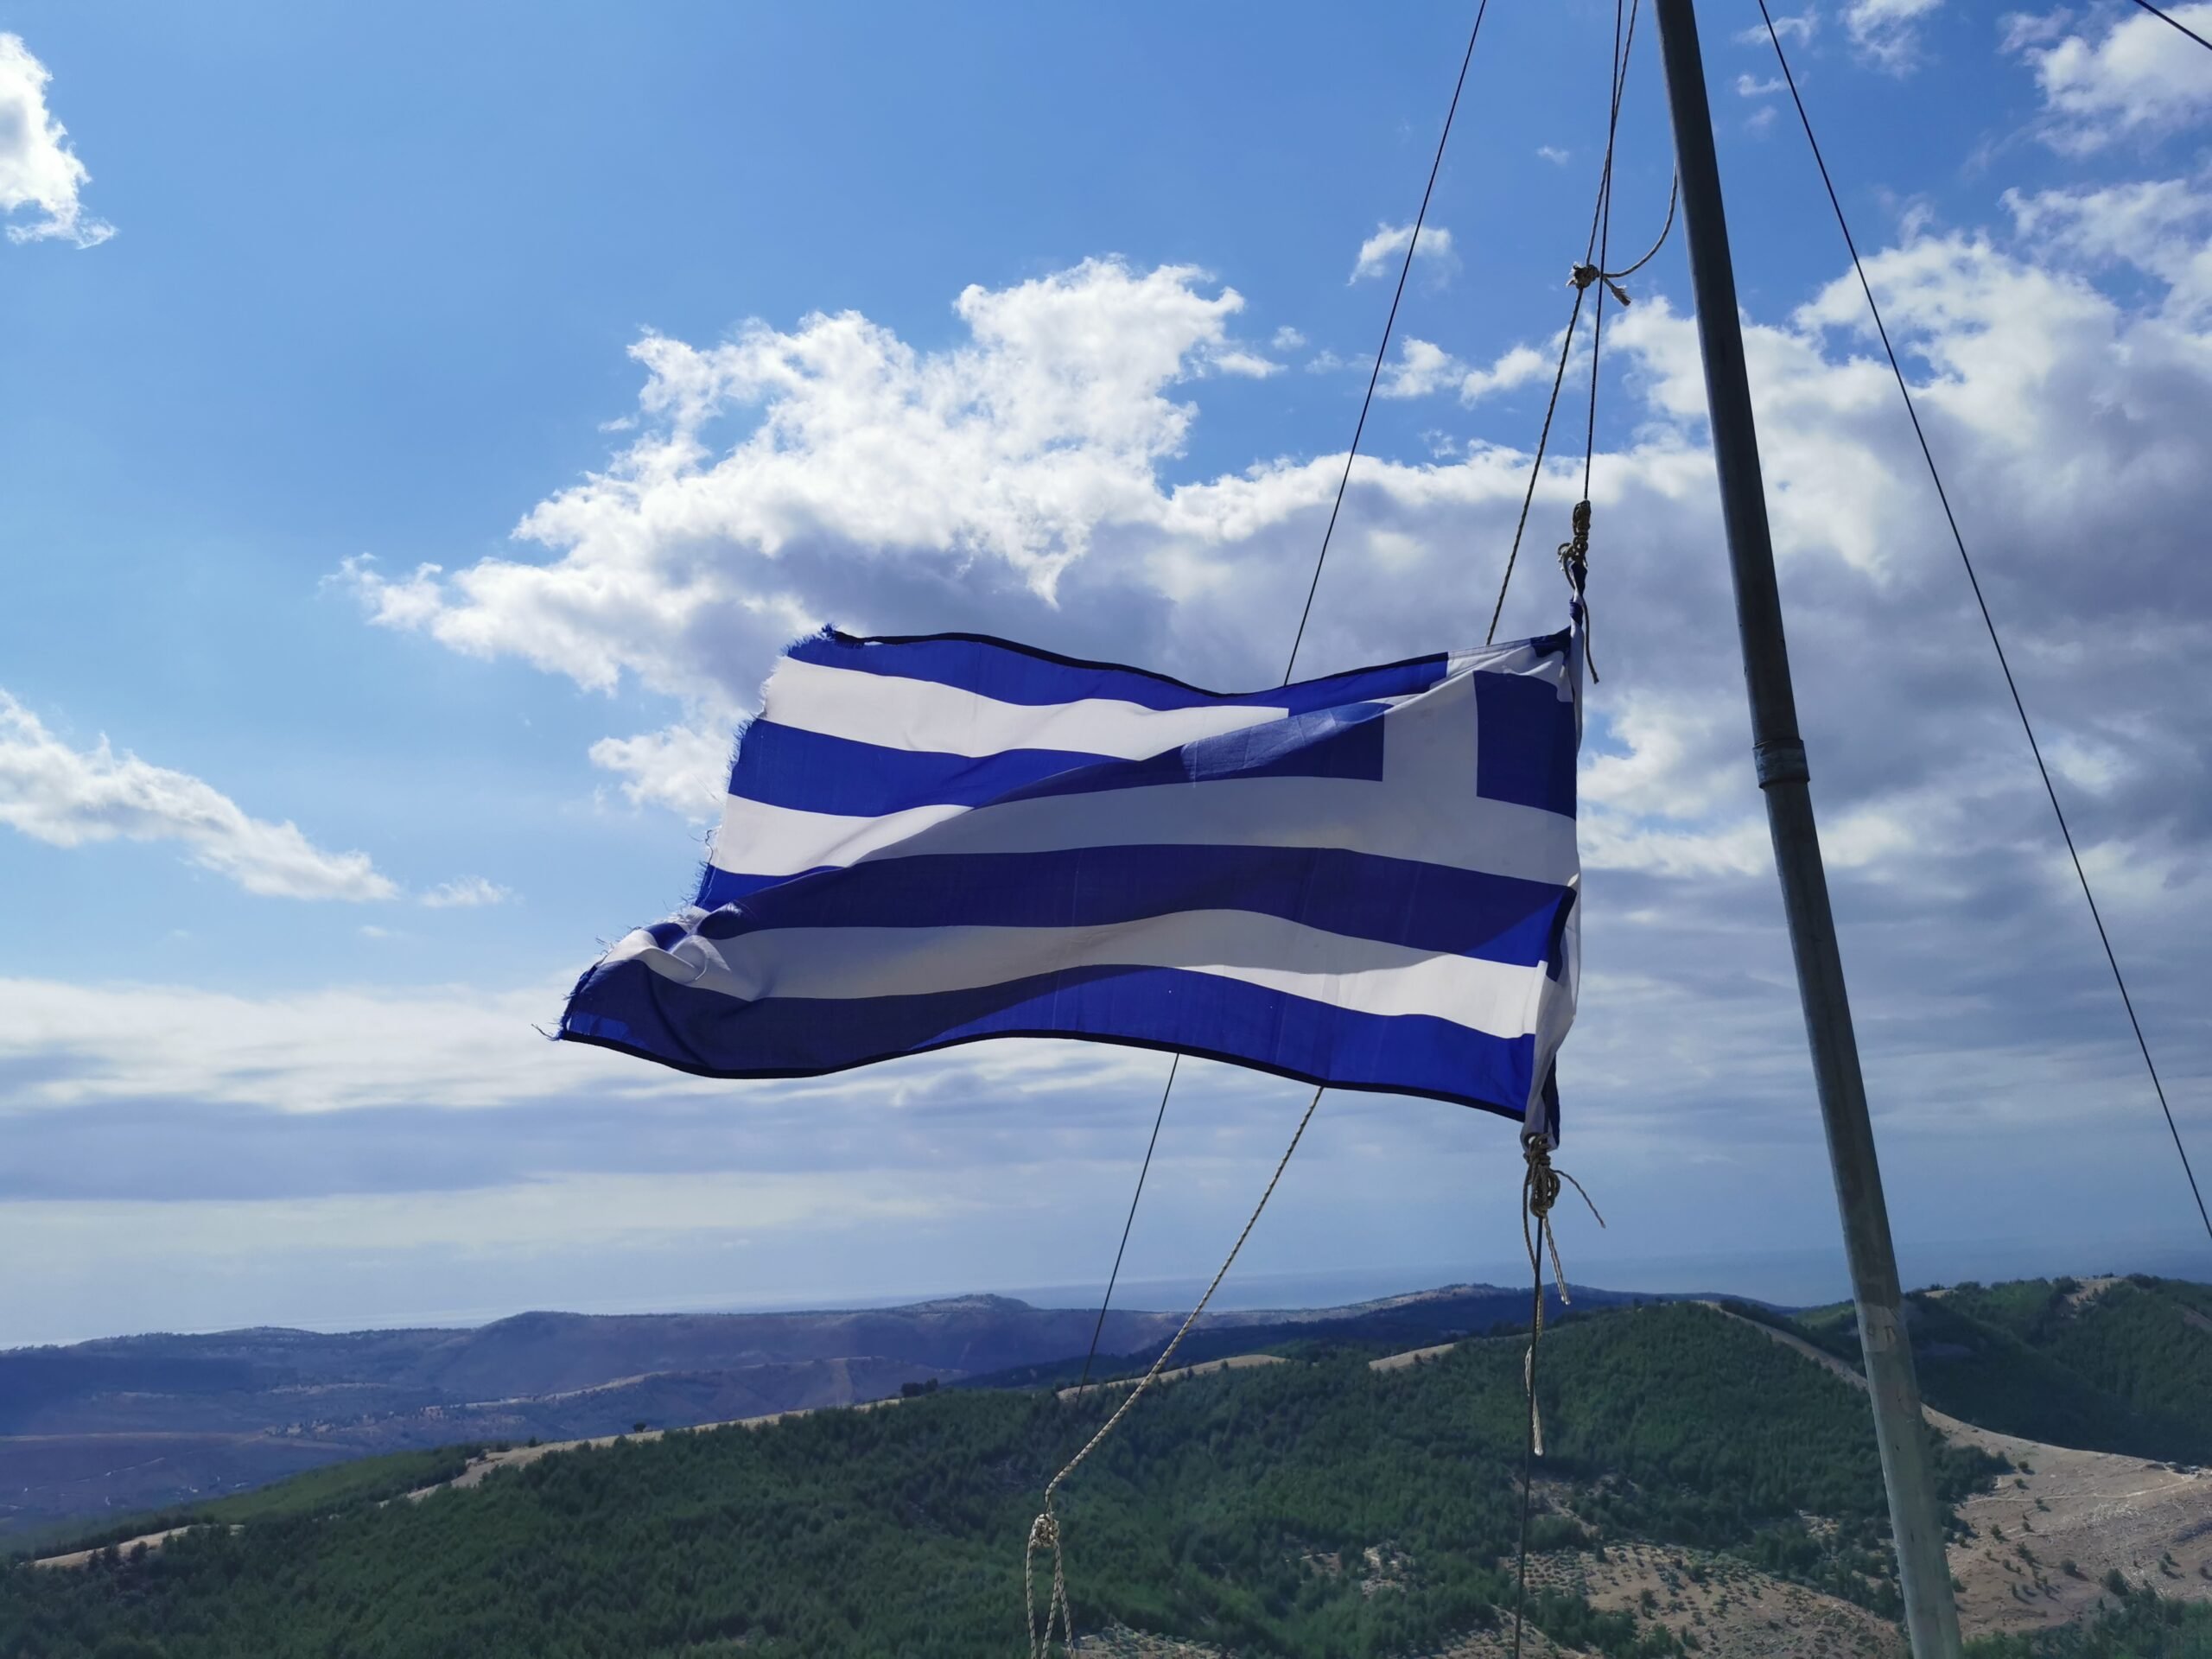  Atenţionare de călătorie Republica Elenă – grevă generală în sectorul public